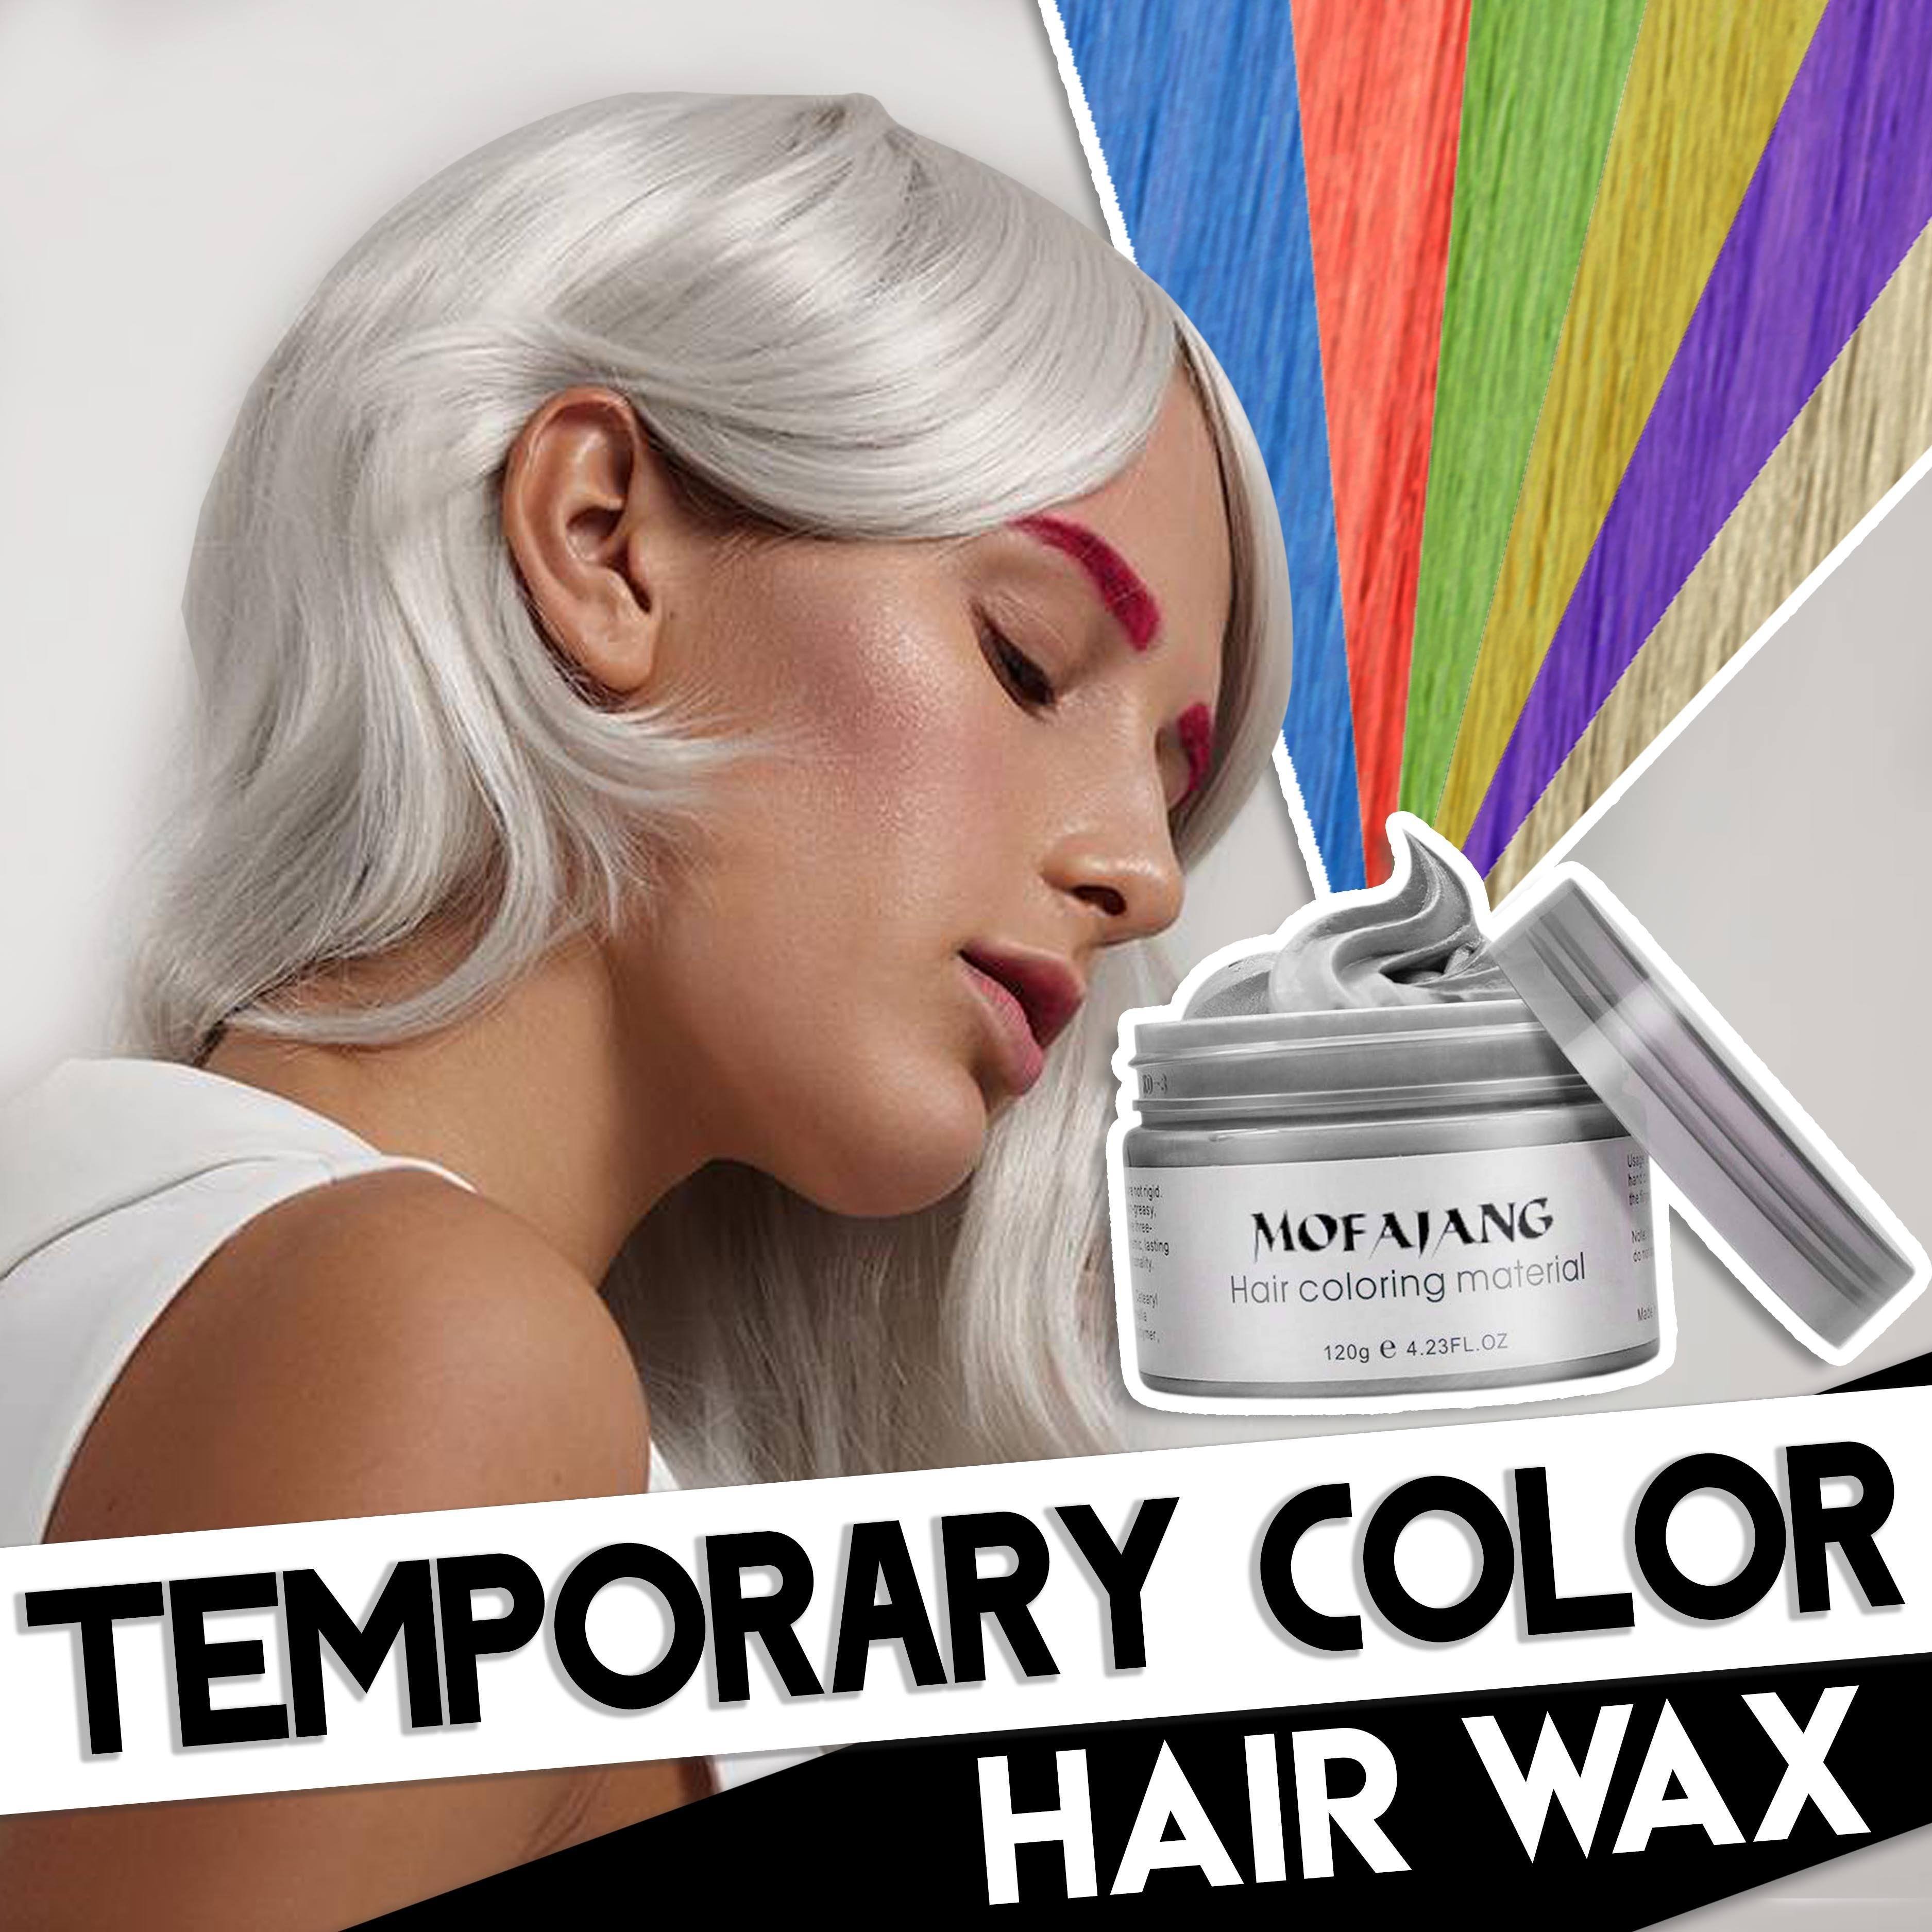 Temporary Color Hair Wax